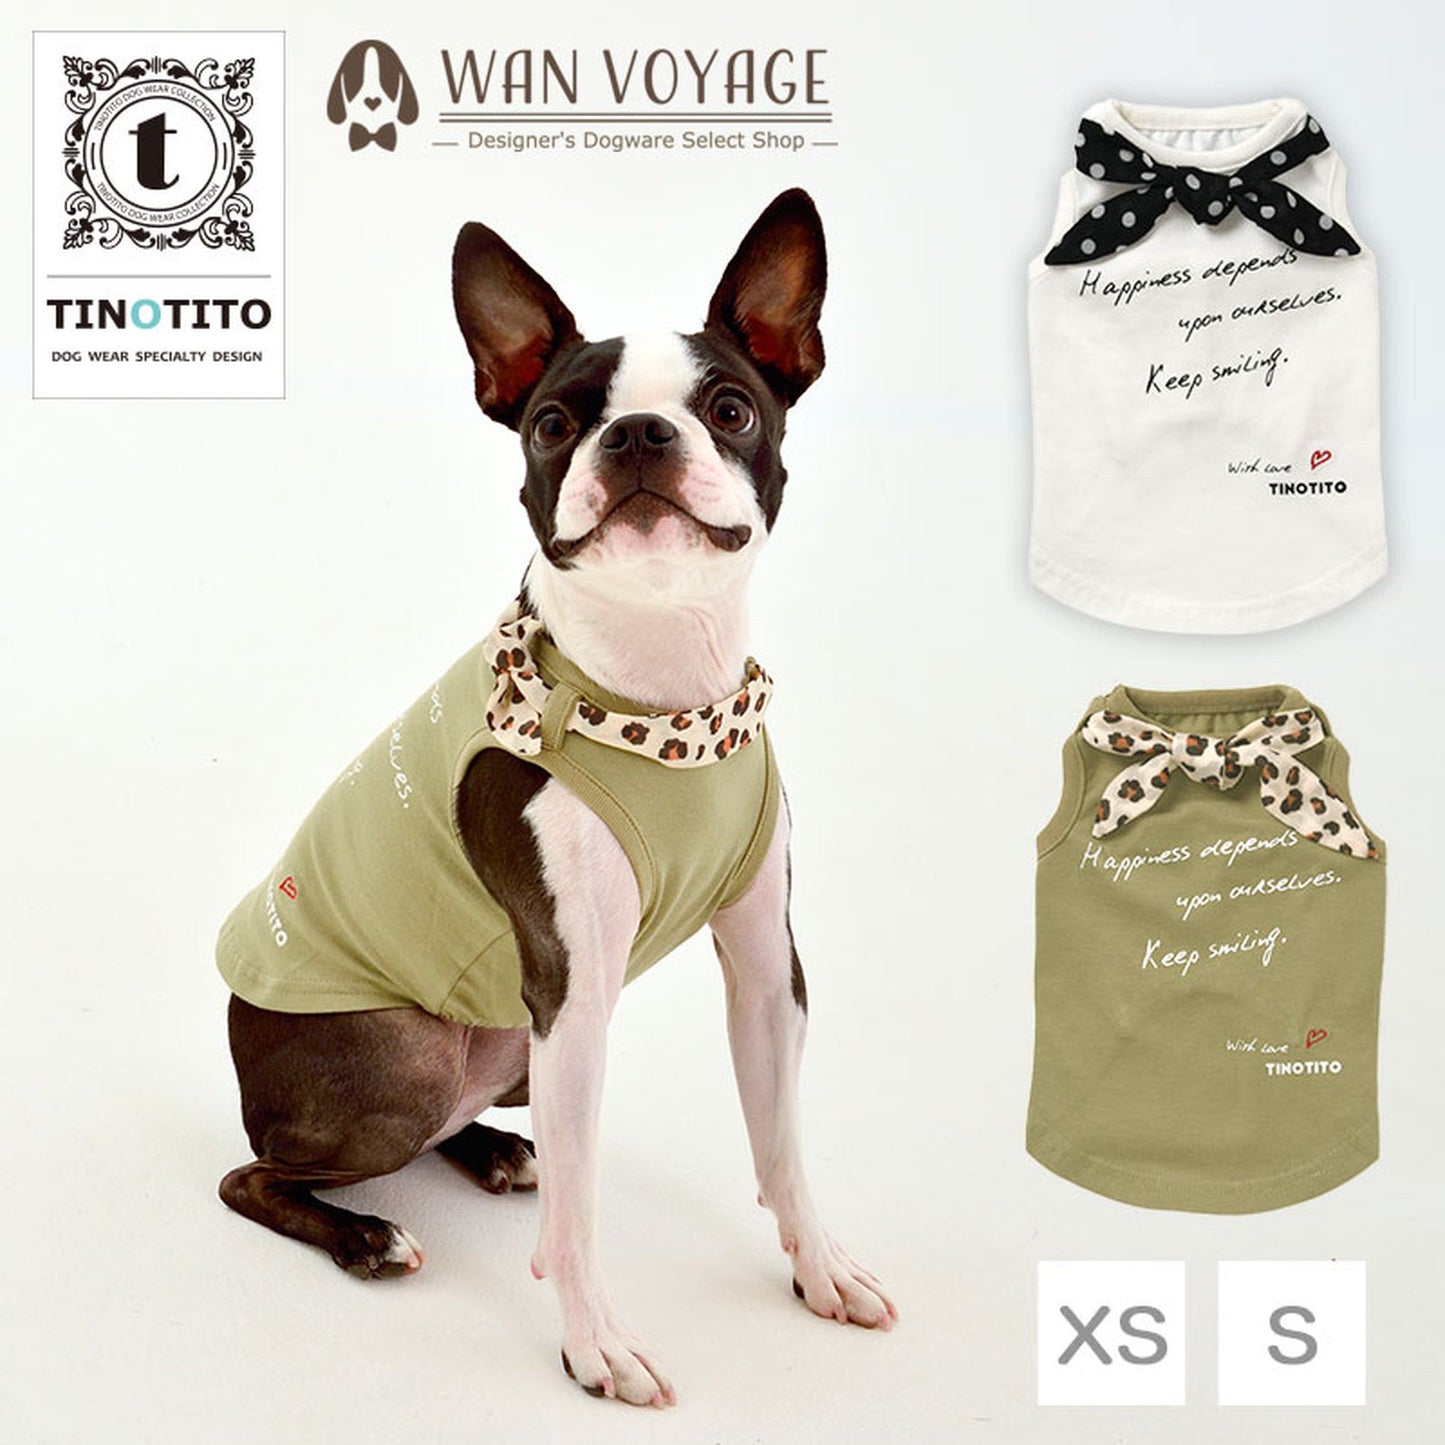 スカーフ付きタンクトップ 犬服 ドッグウェア XS/S ワンボヤージュ TINOTITO ティノティート トイプードル チワワ ダックス tt141168-1